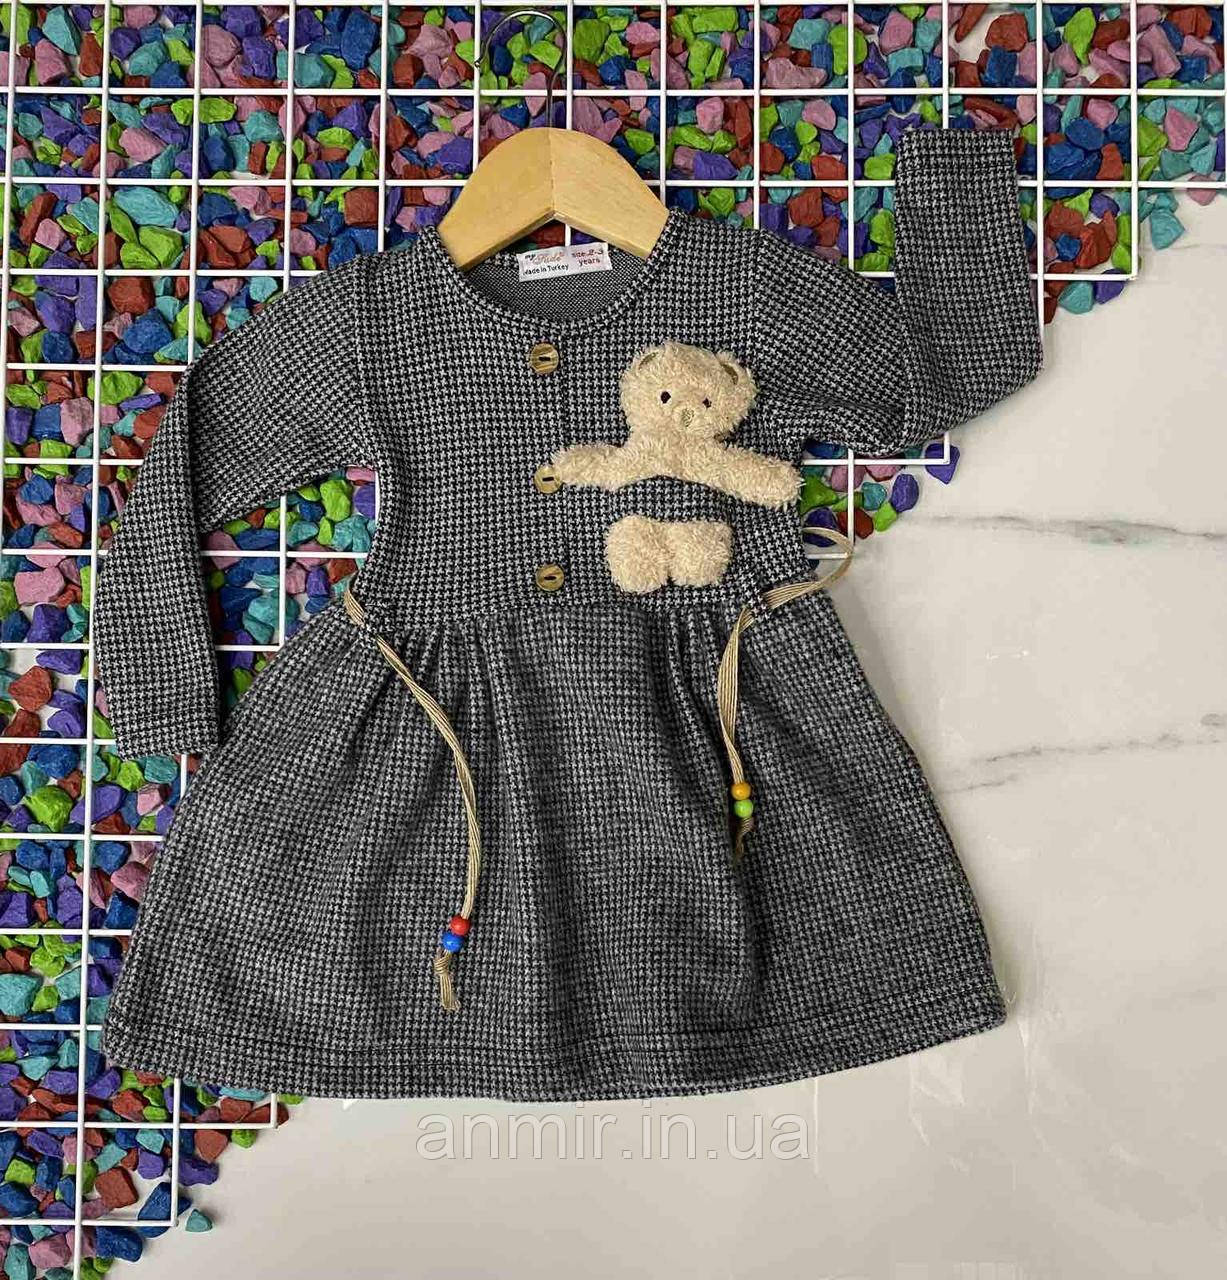 Дитяче плаття трикотажнеМІШКА для дівчинки 2-7 років, колір і принт уточнюйте під час замовлення